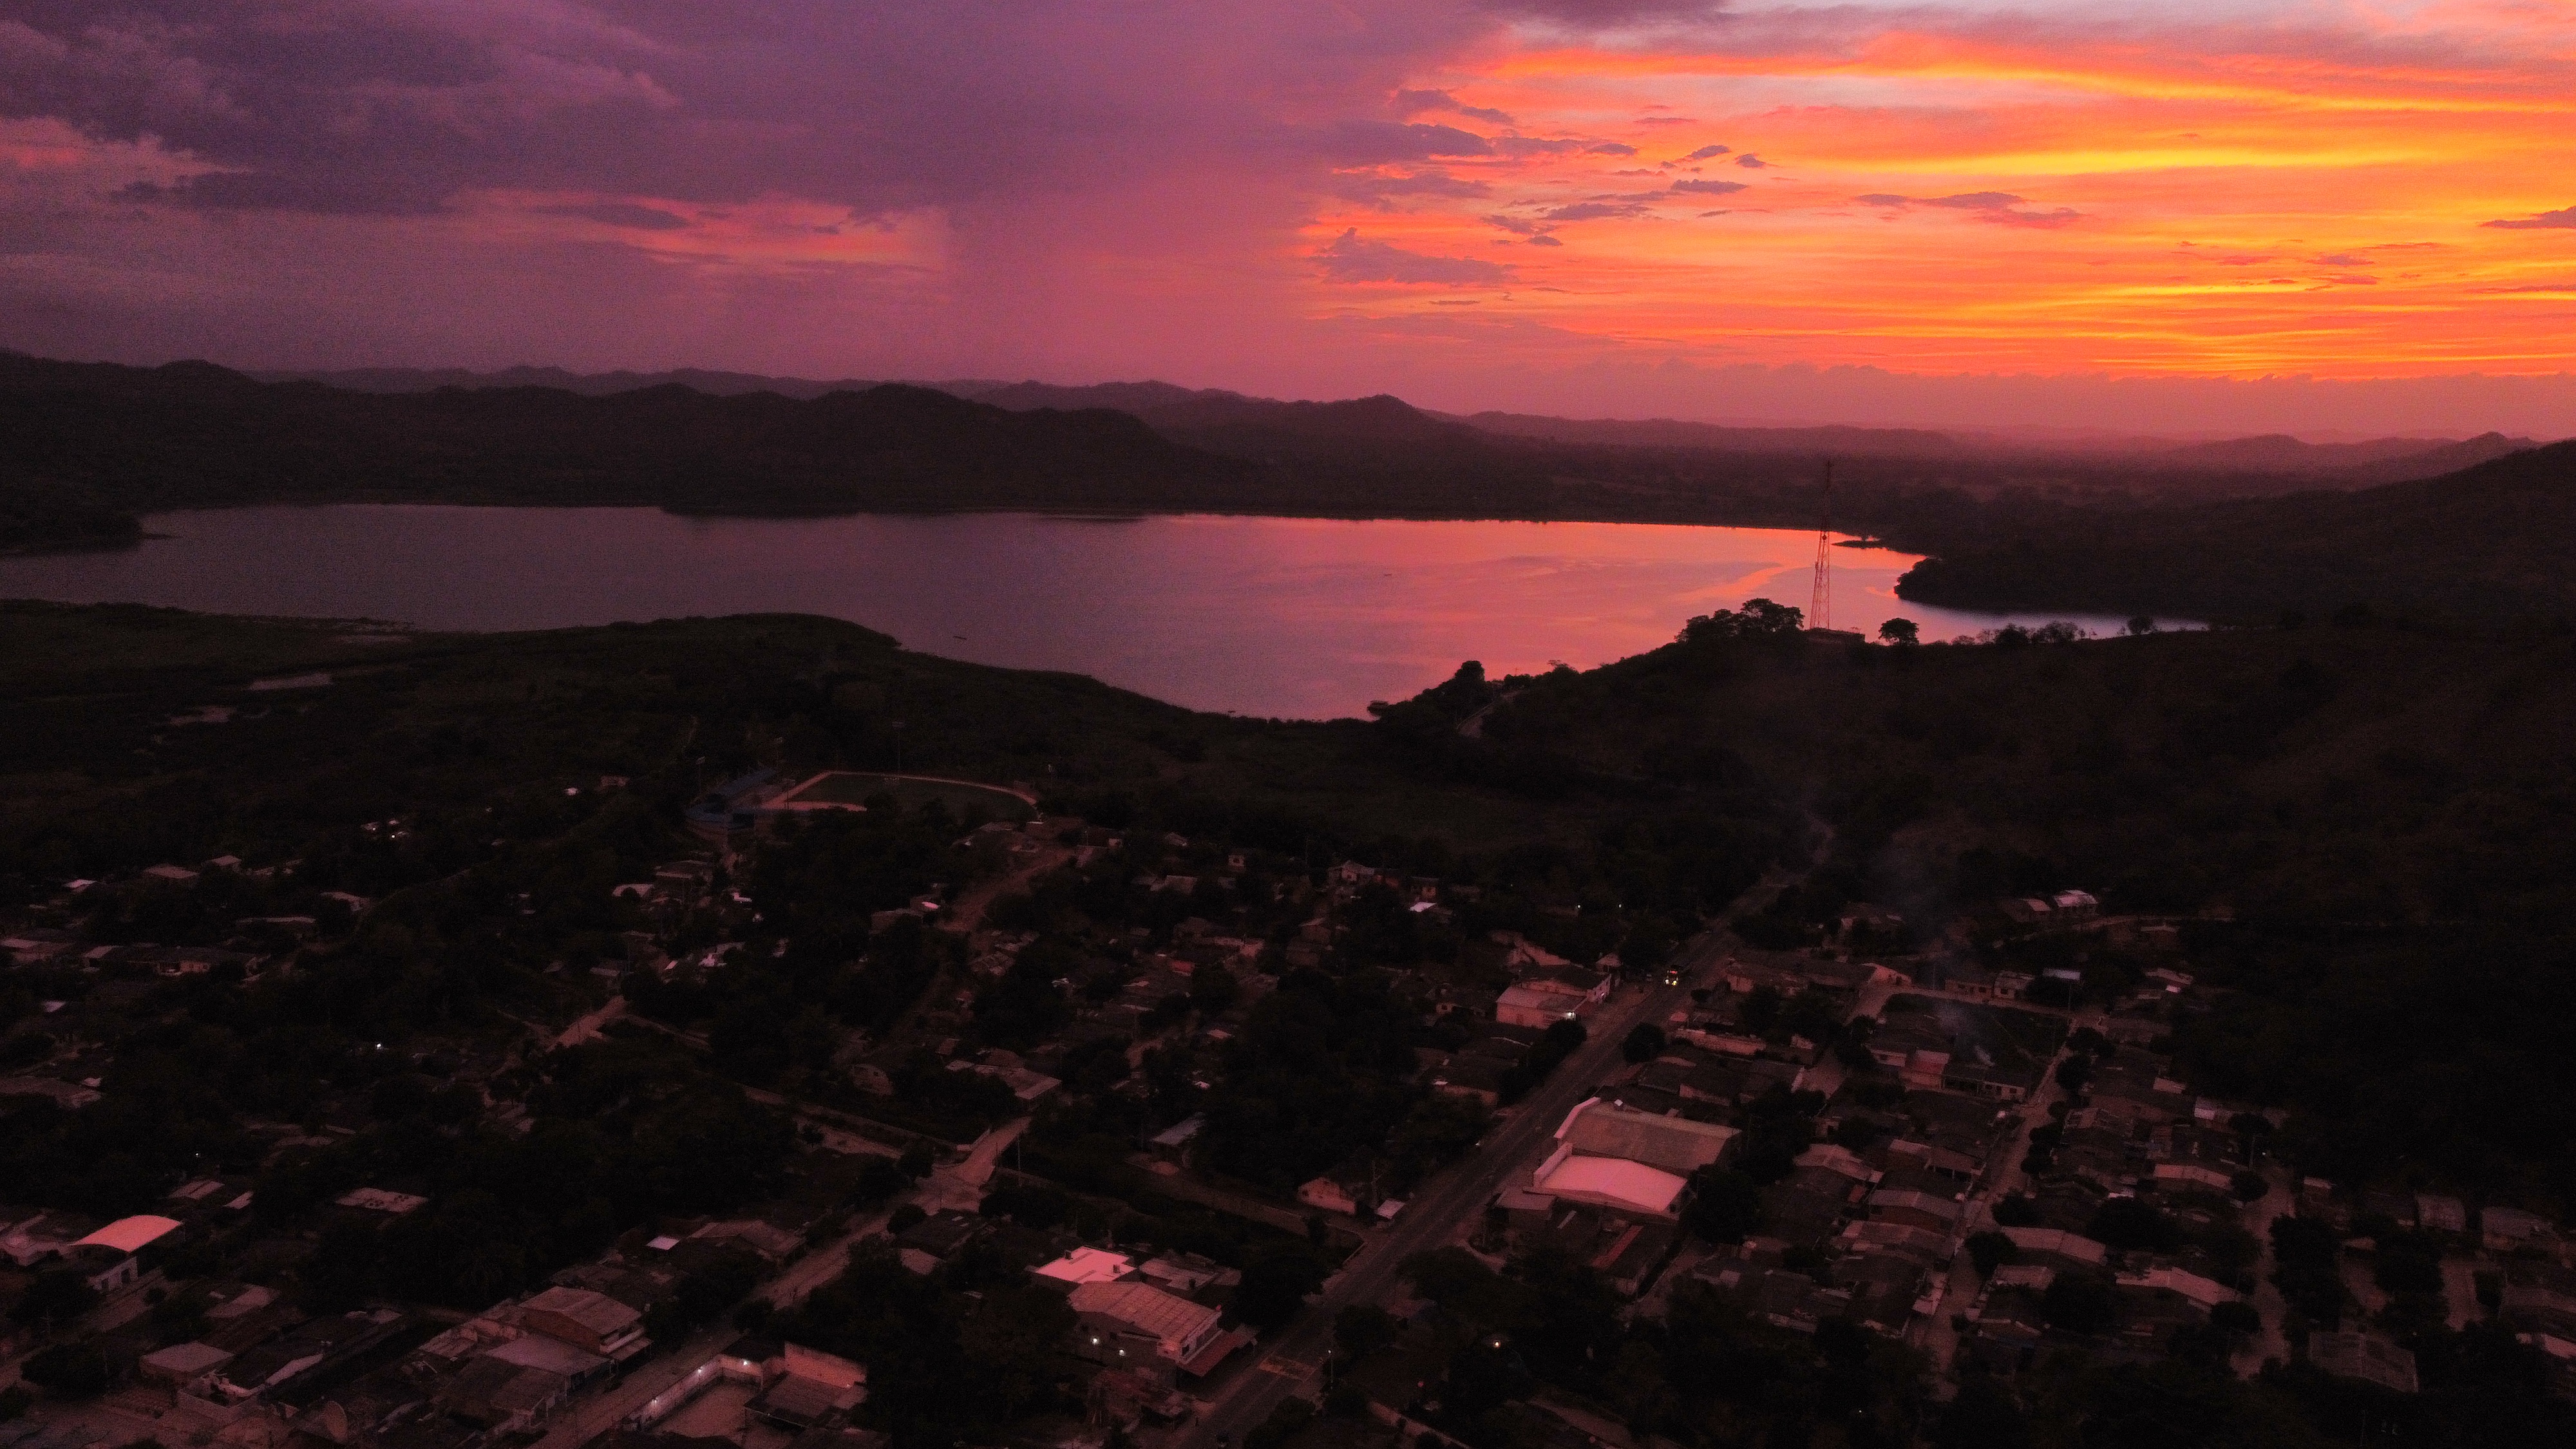 Luruaco, Atlántico. Trazos de colores naranjas, azules, morados y rosados se reflejaron en el cielo y agua de Luruaco. Esto se siente cada tarde en el municipio.